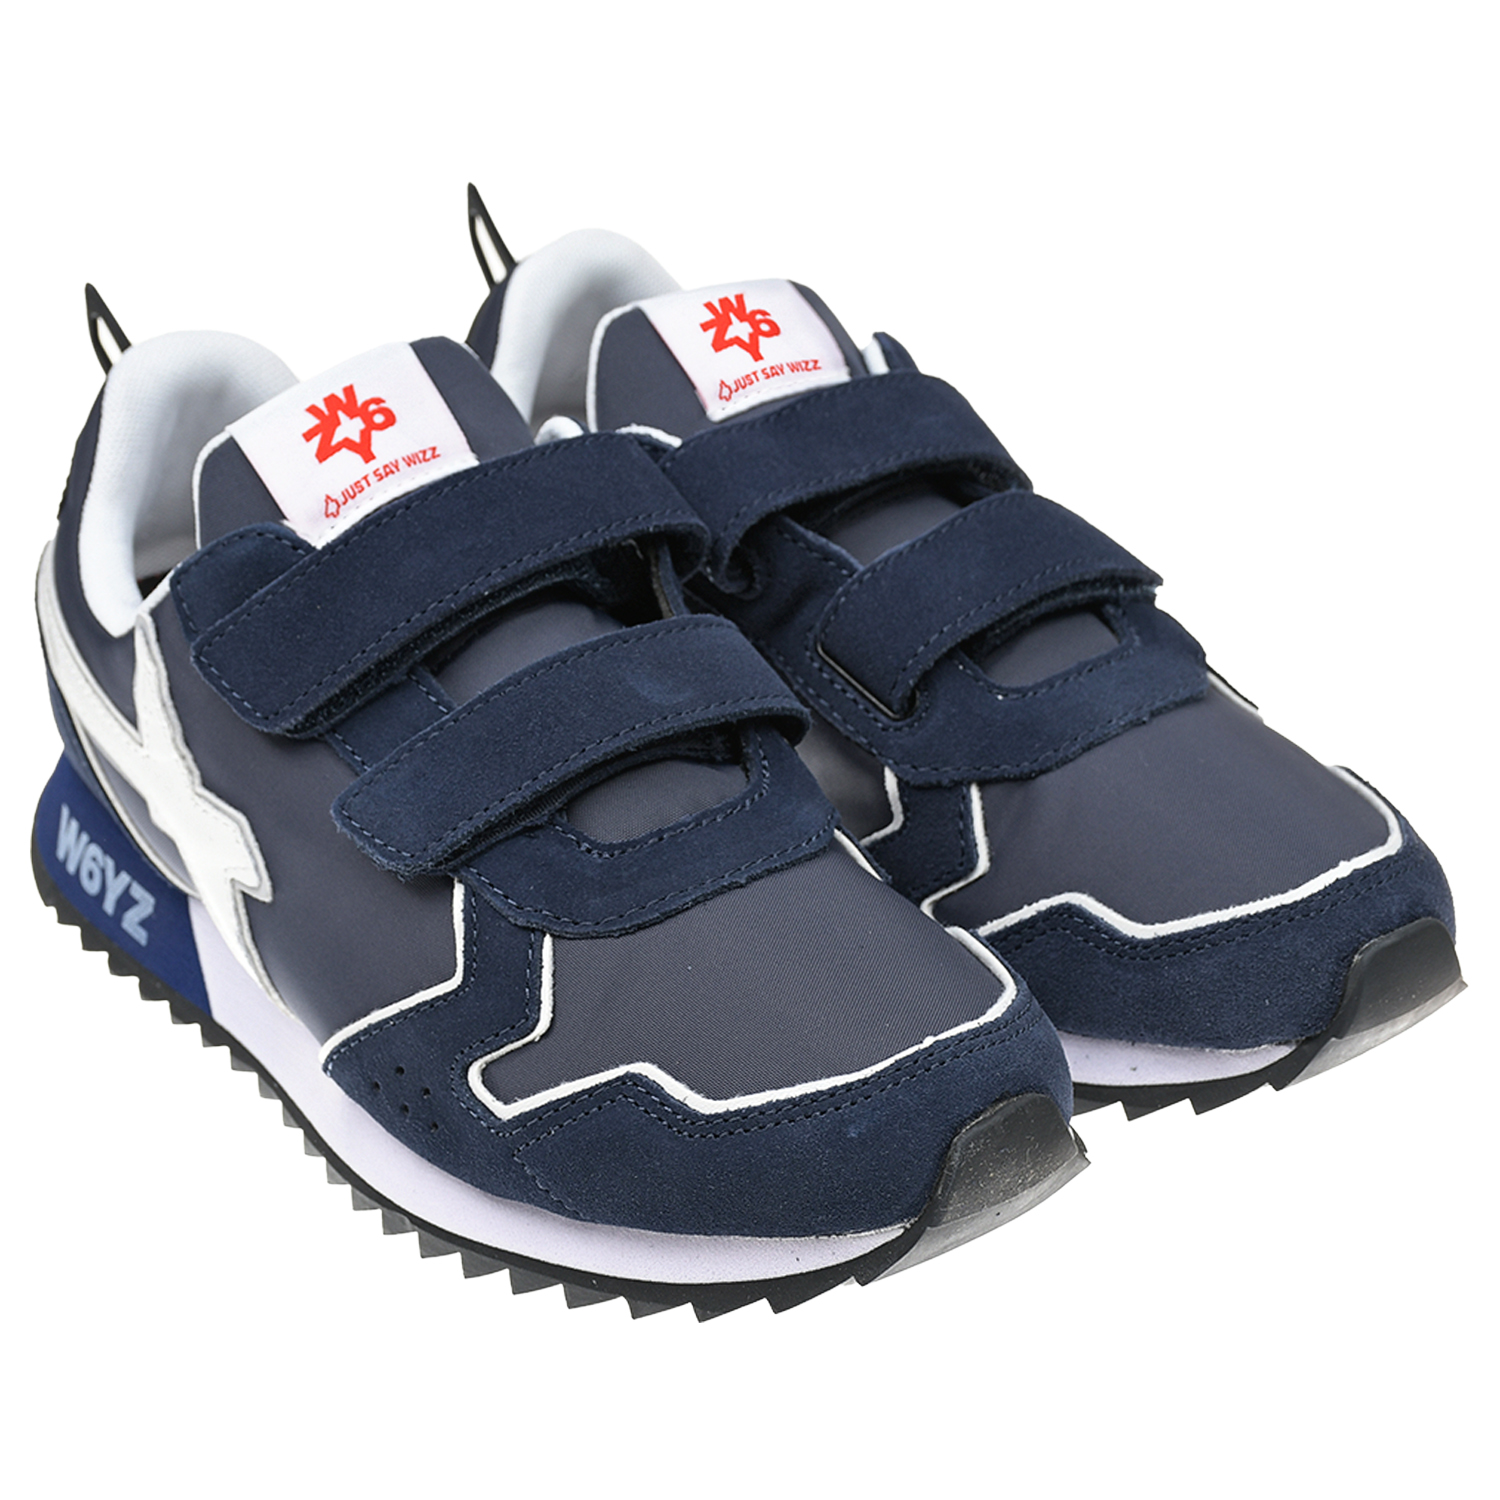 Темно-синие кроссовки с белым лого W6YZ белые кроссовки с застежками велкро dorothee schumacher